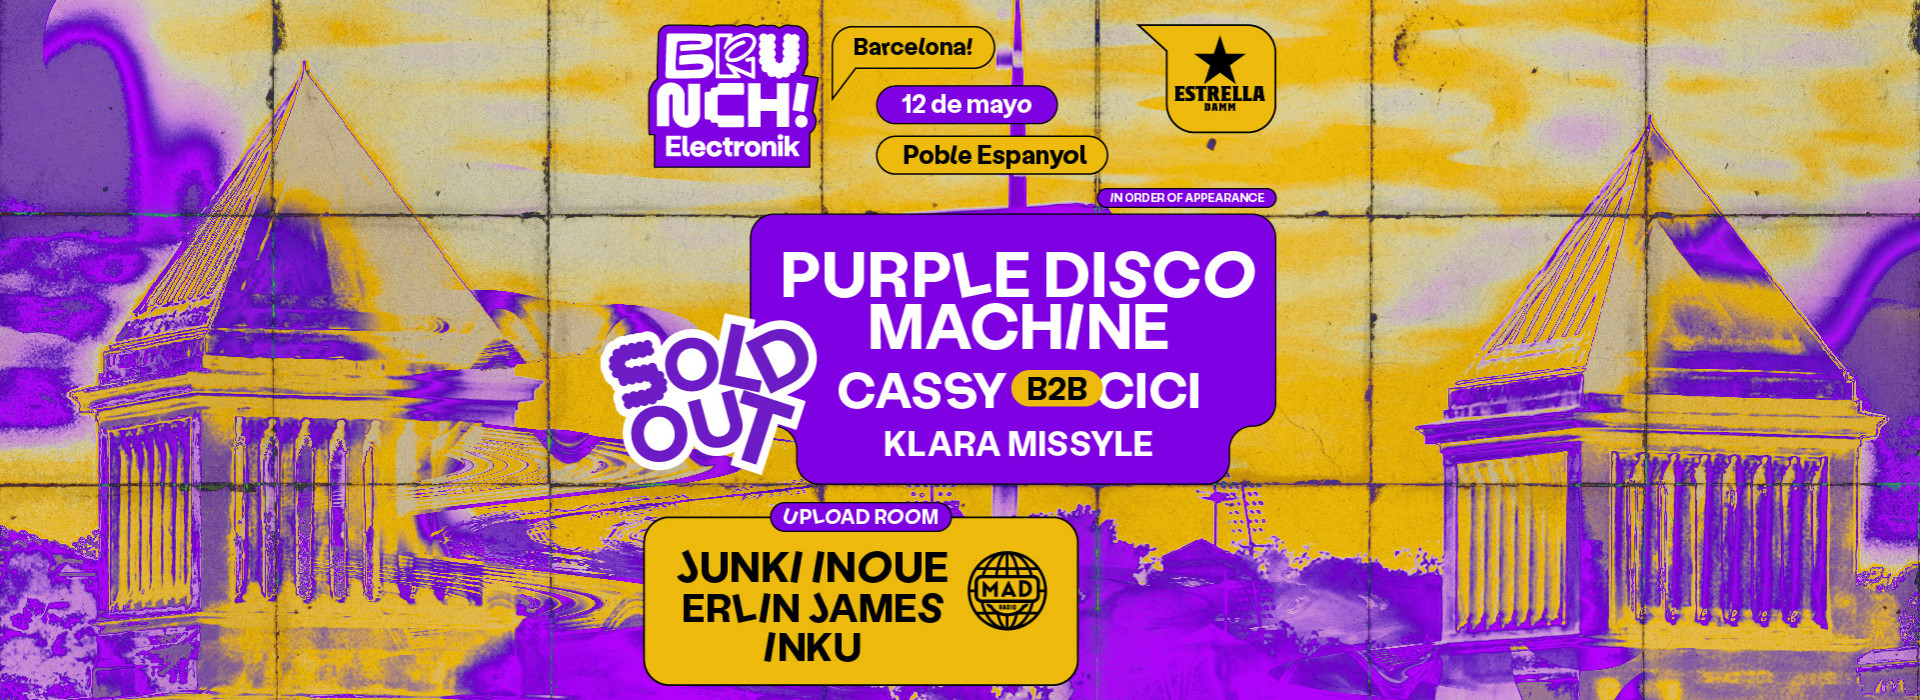 Brunch Electronik #7 Purple Disco Machine, Cassy b2b Cici, Klara Missyle y más